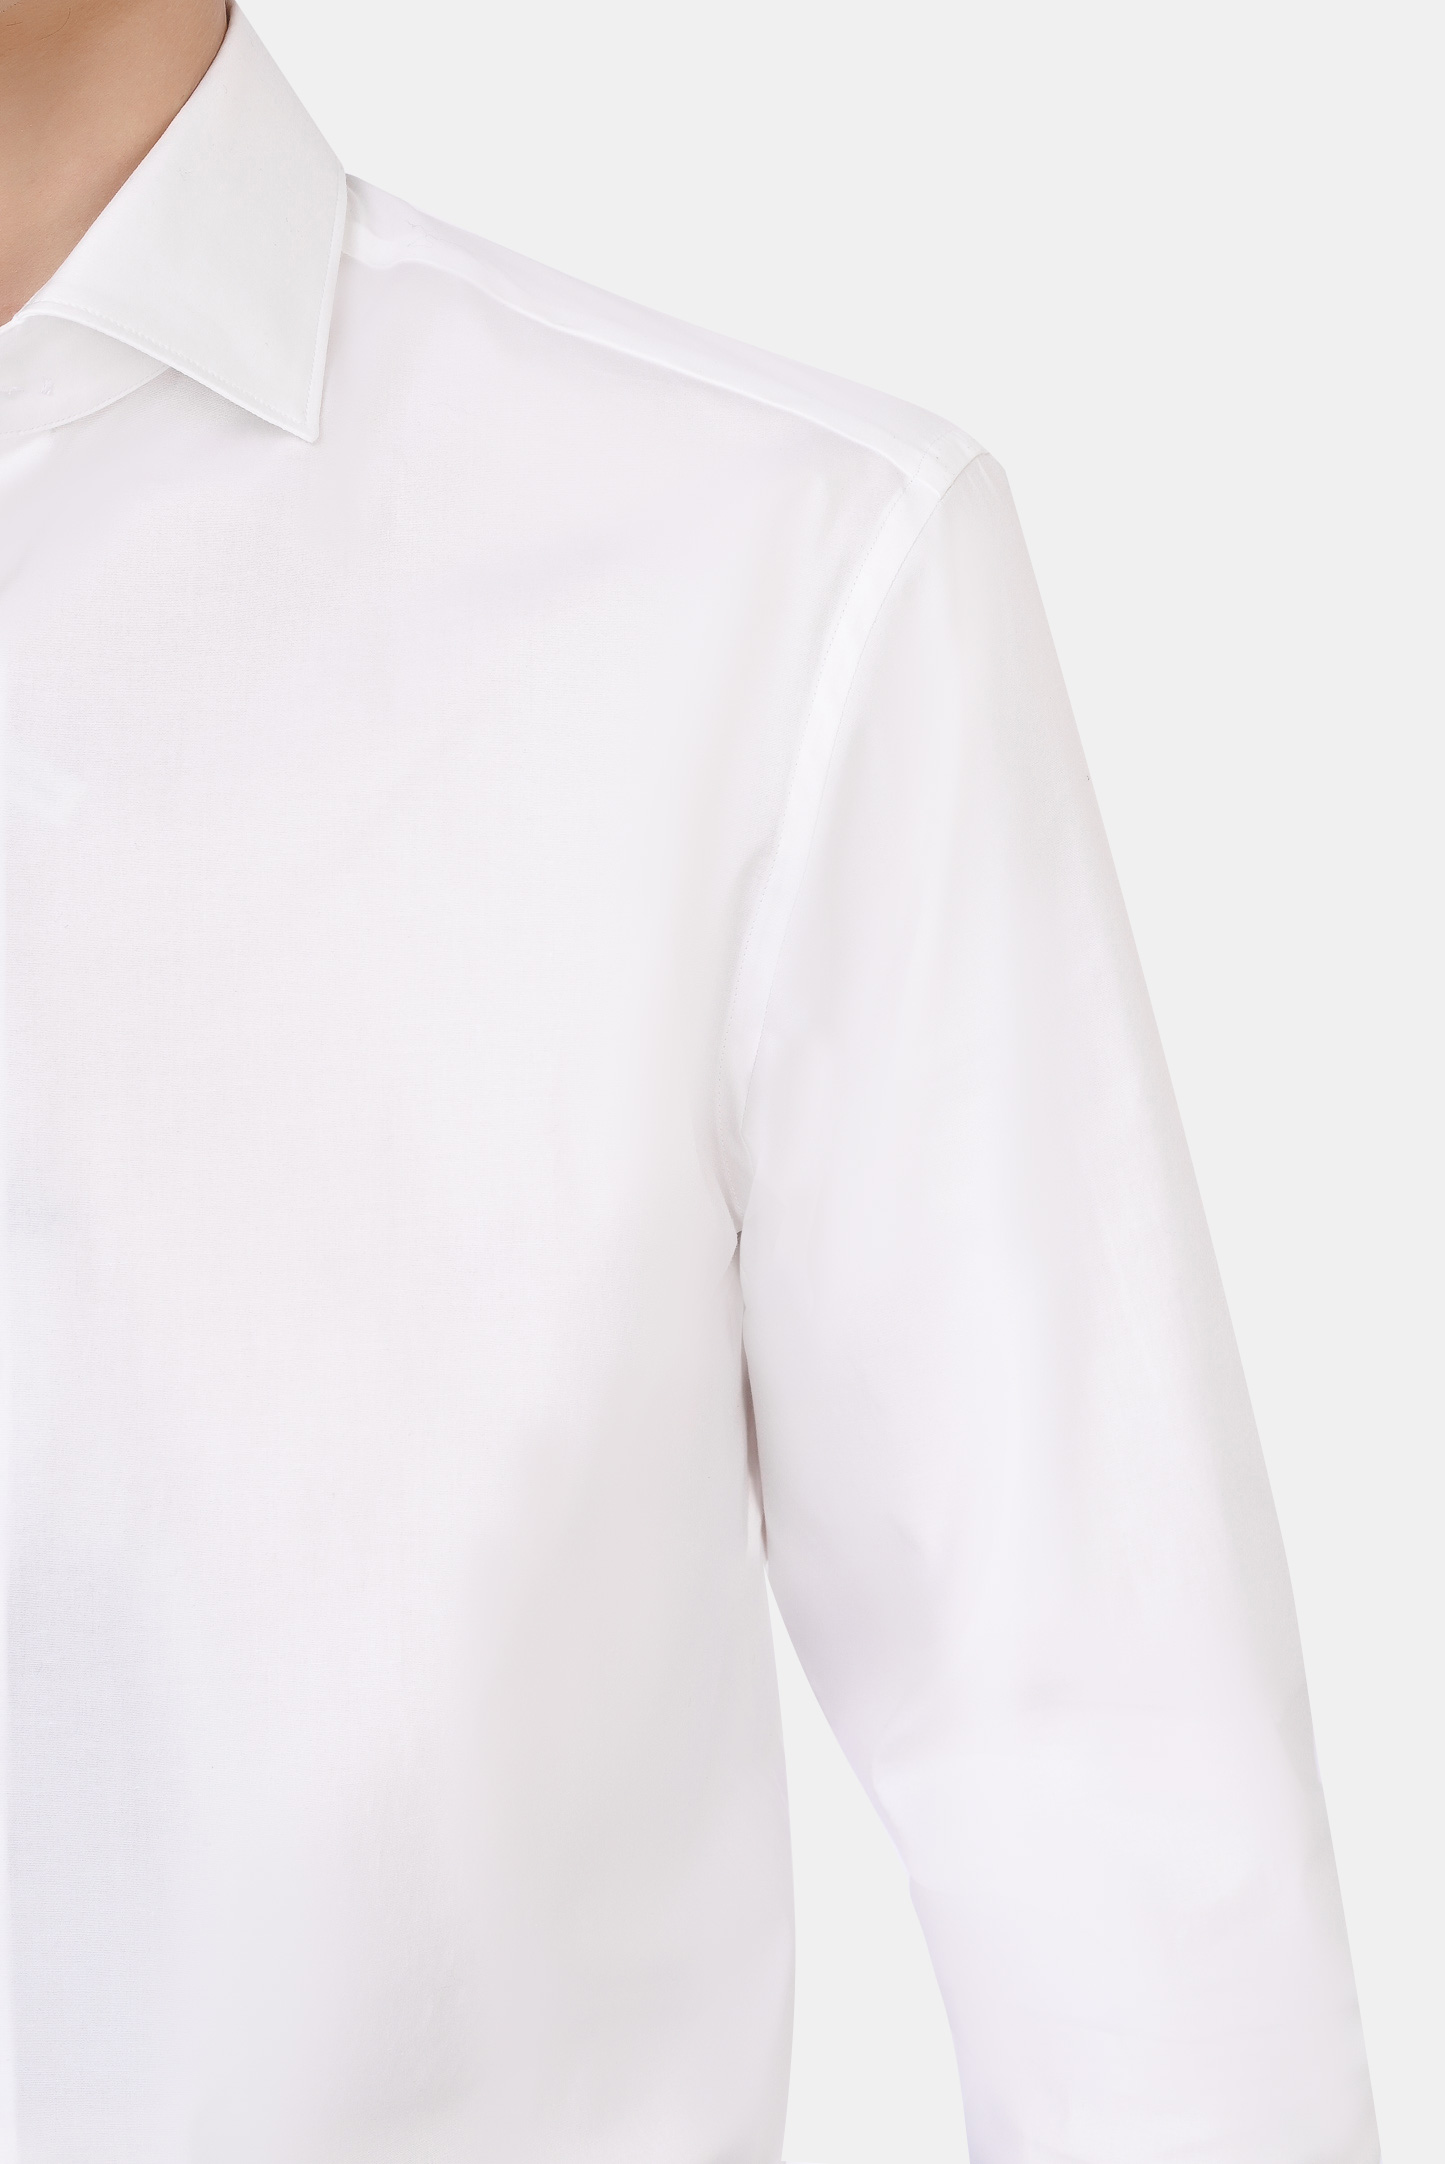 Рубашка Z ZEGNA 205100 ZCRF1, цвет: Белый, Мужской